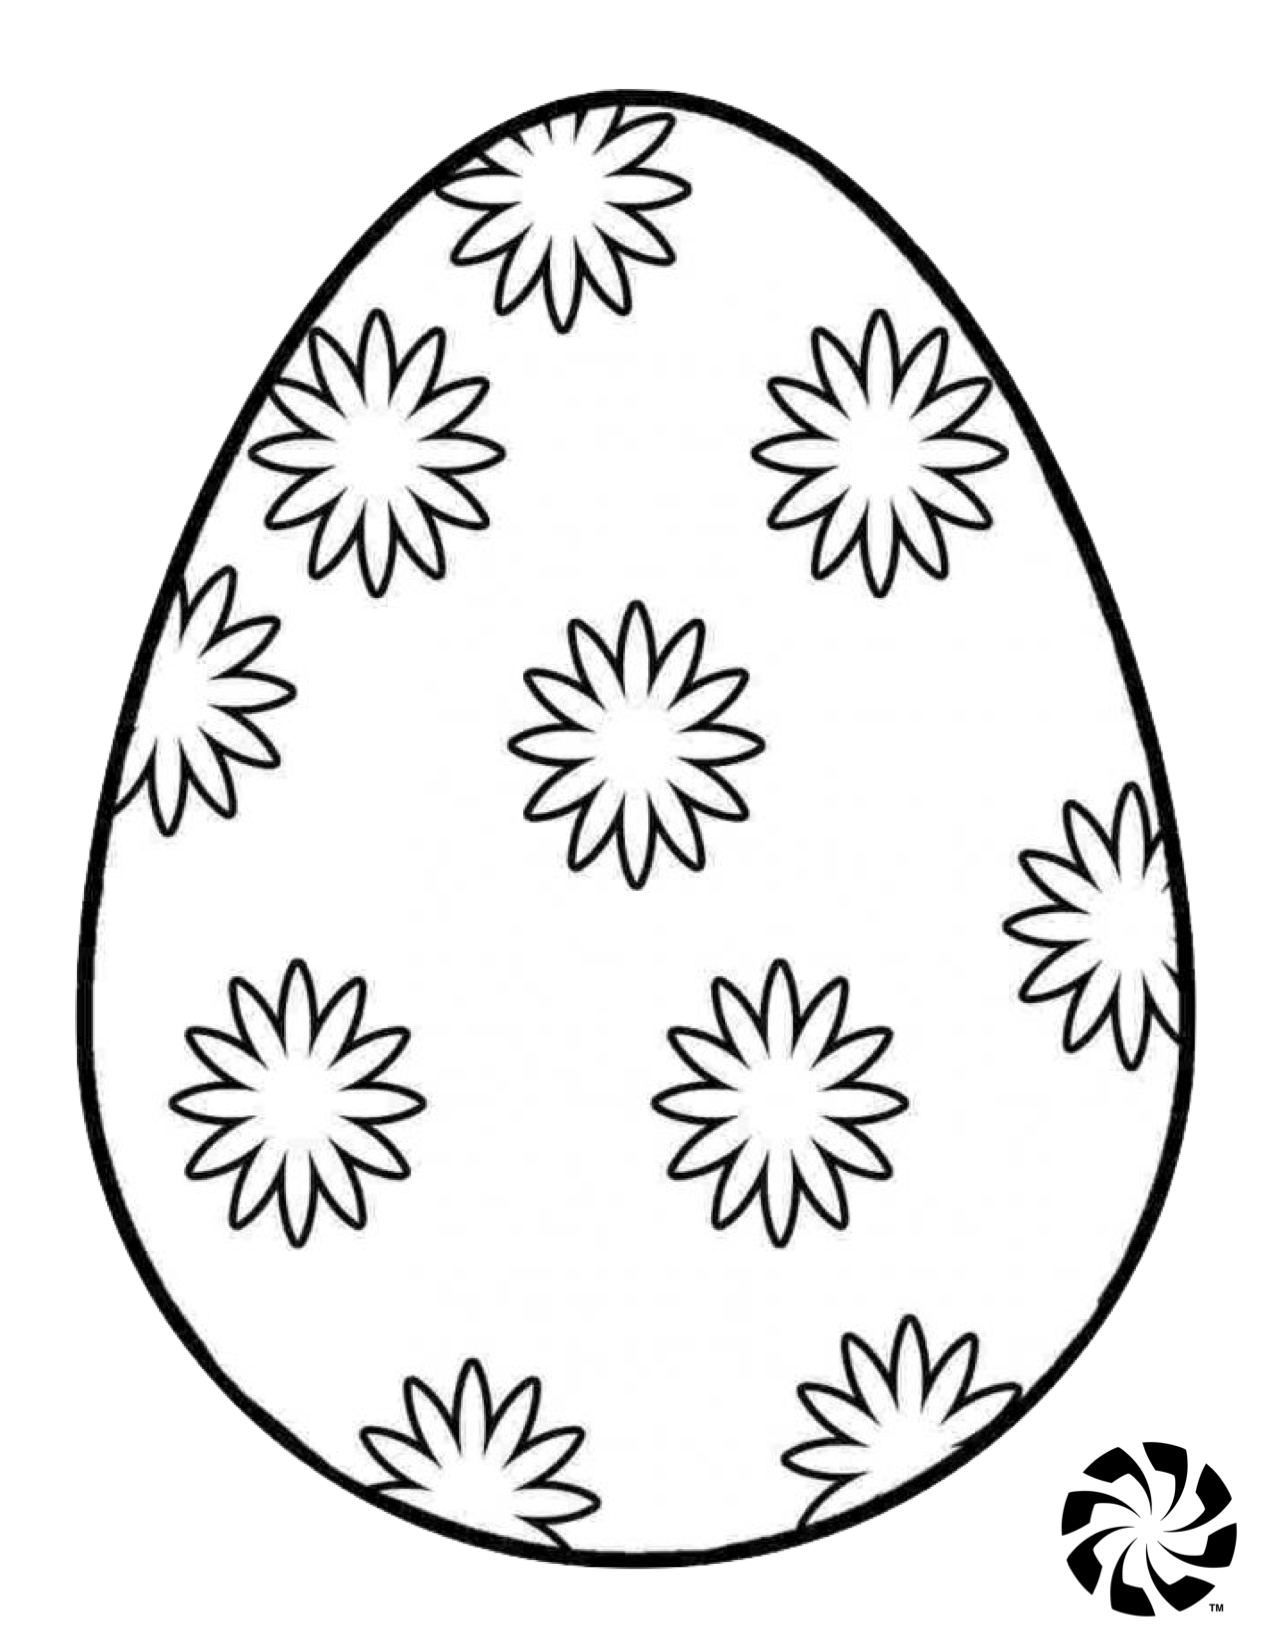 Заготовка пасхального яйца. Пасхальное яйцо раскраска. Яйцо раскраска для детей. Пасхальное яйцо раскраска для детей. Трафареты пасхальных яиц для раскрашивания.